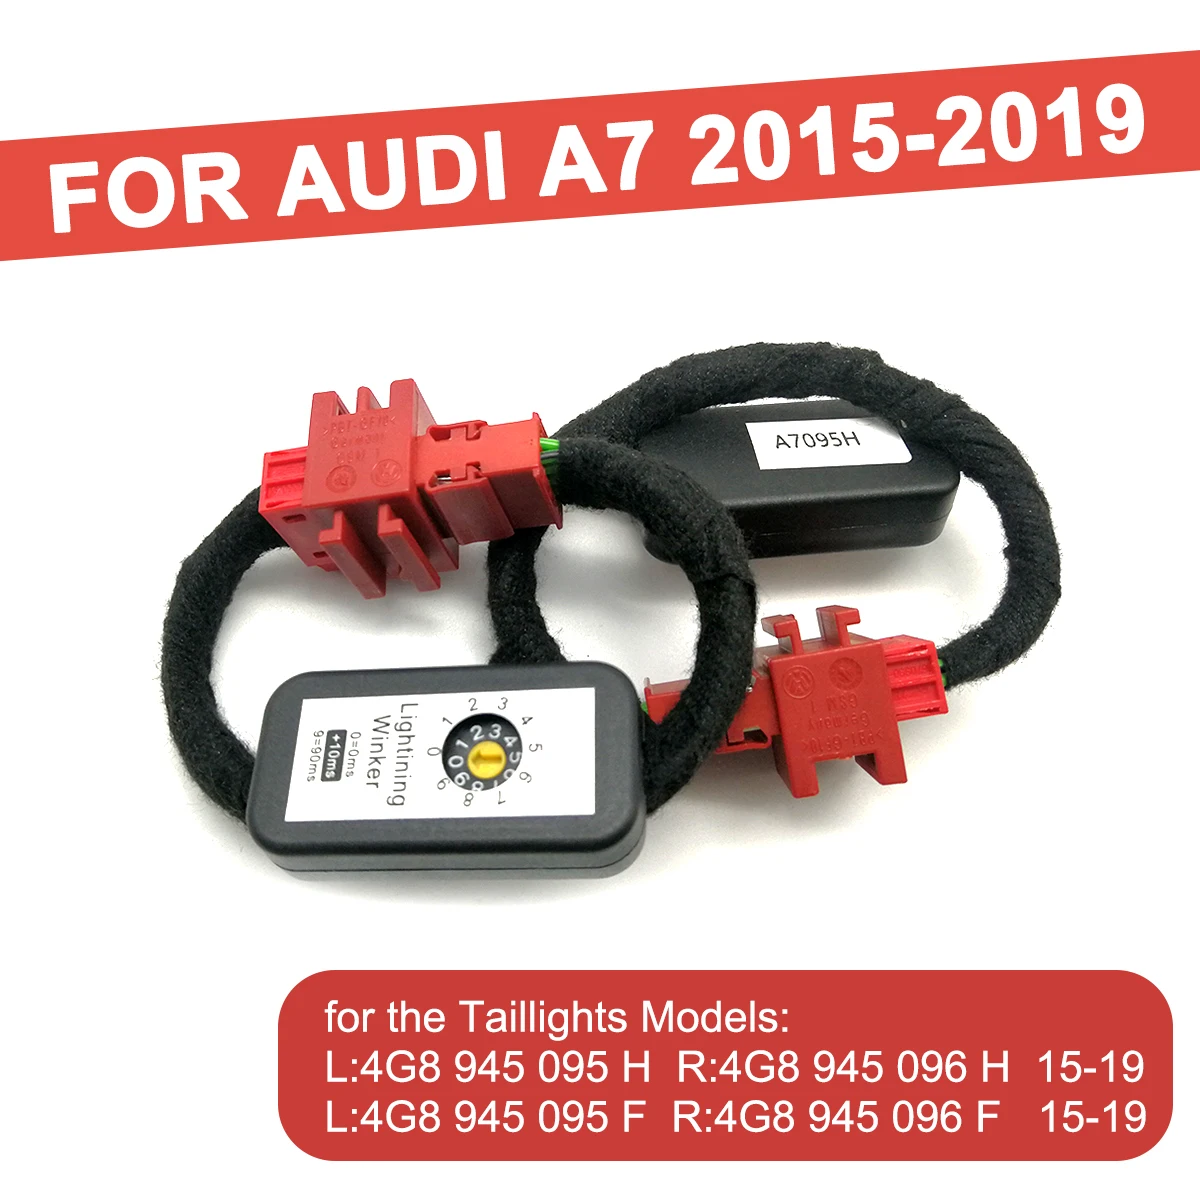 

Динамический указатель поворота, автомобильный телефон, дополнительный модуль, кабель, жгут проводов для Audi A7 Sportback 2015 2016 2017-2019